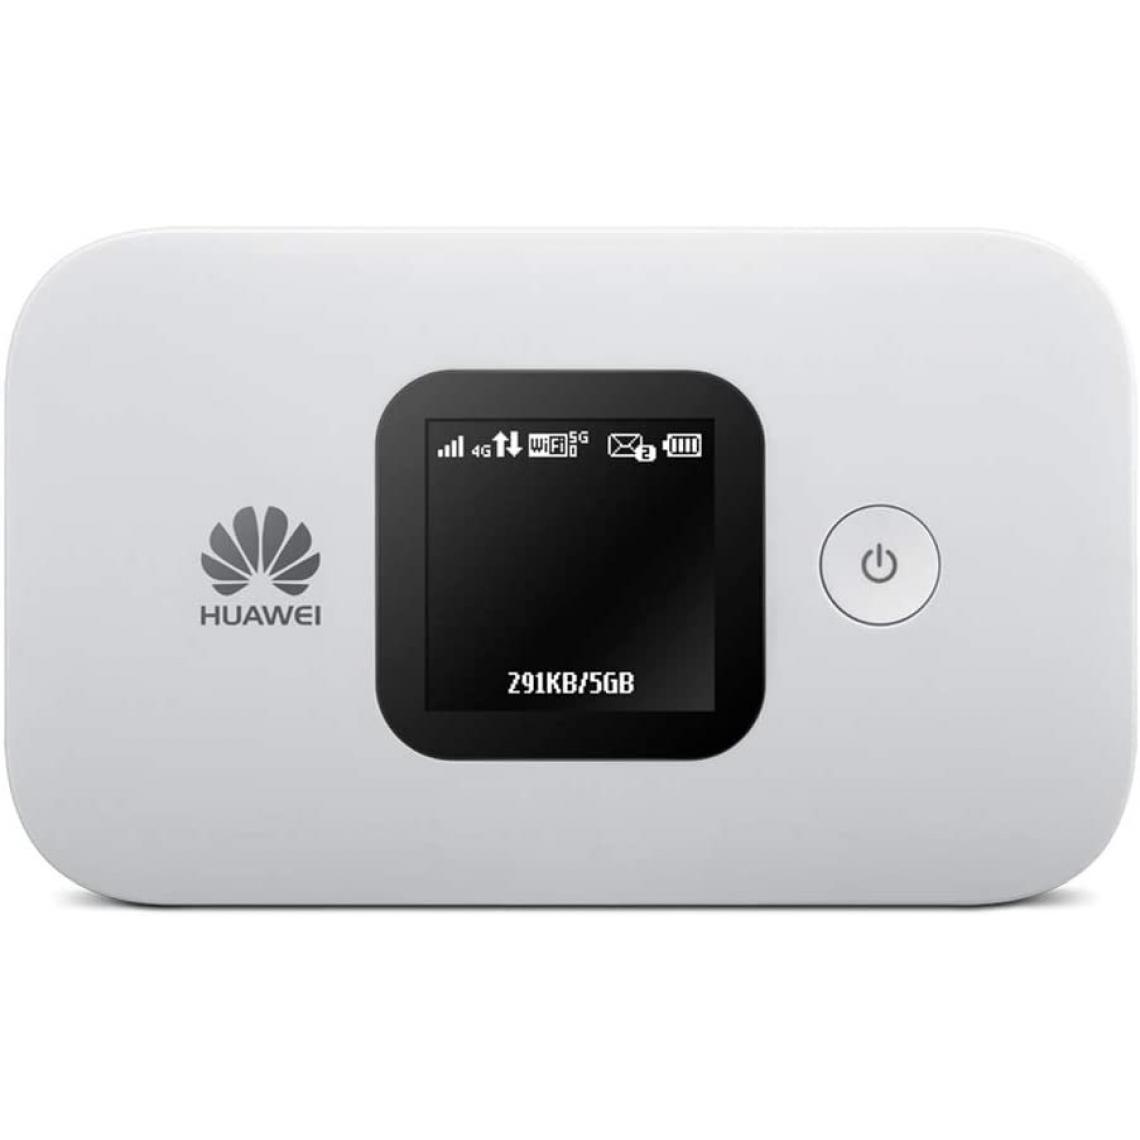 Chrono - Huawei E5577-320 4G LTE 150 mégabit/s Modem Hotspot WiFi USB, Batterie 1.500 mAh, 2 x TS9ï¼Blanc - Modem / Routeur / Points d'accès